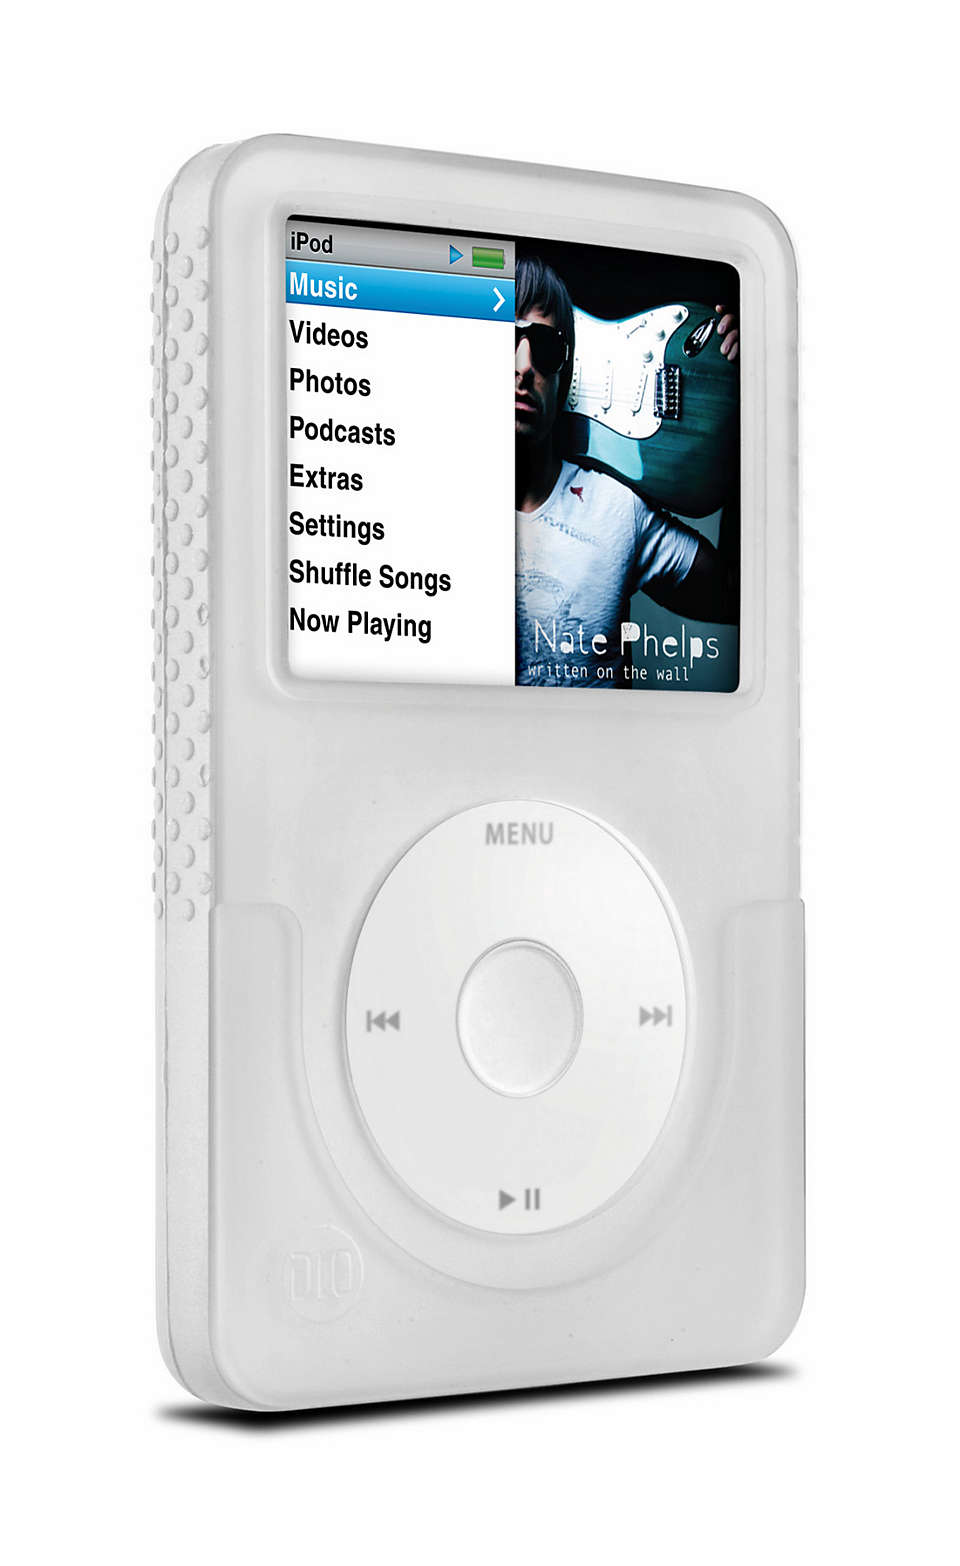 Aizsargājiet savu iPod stilīgi